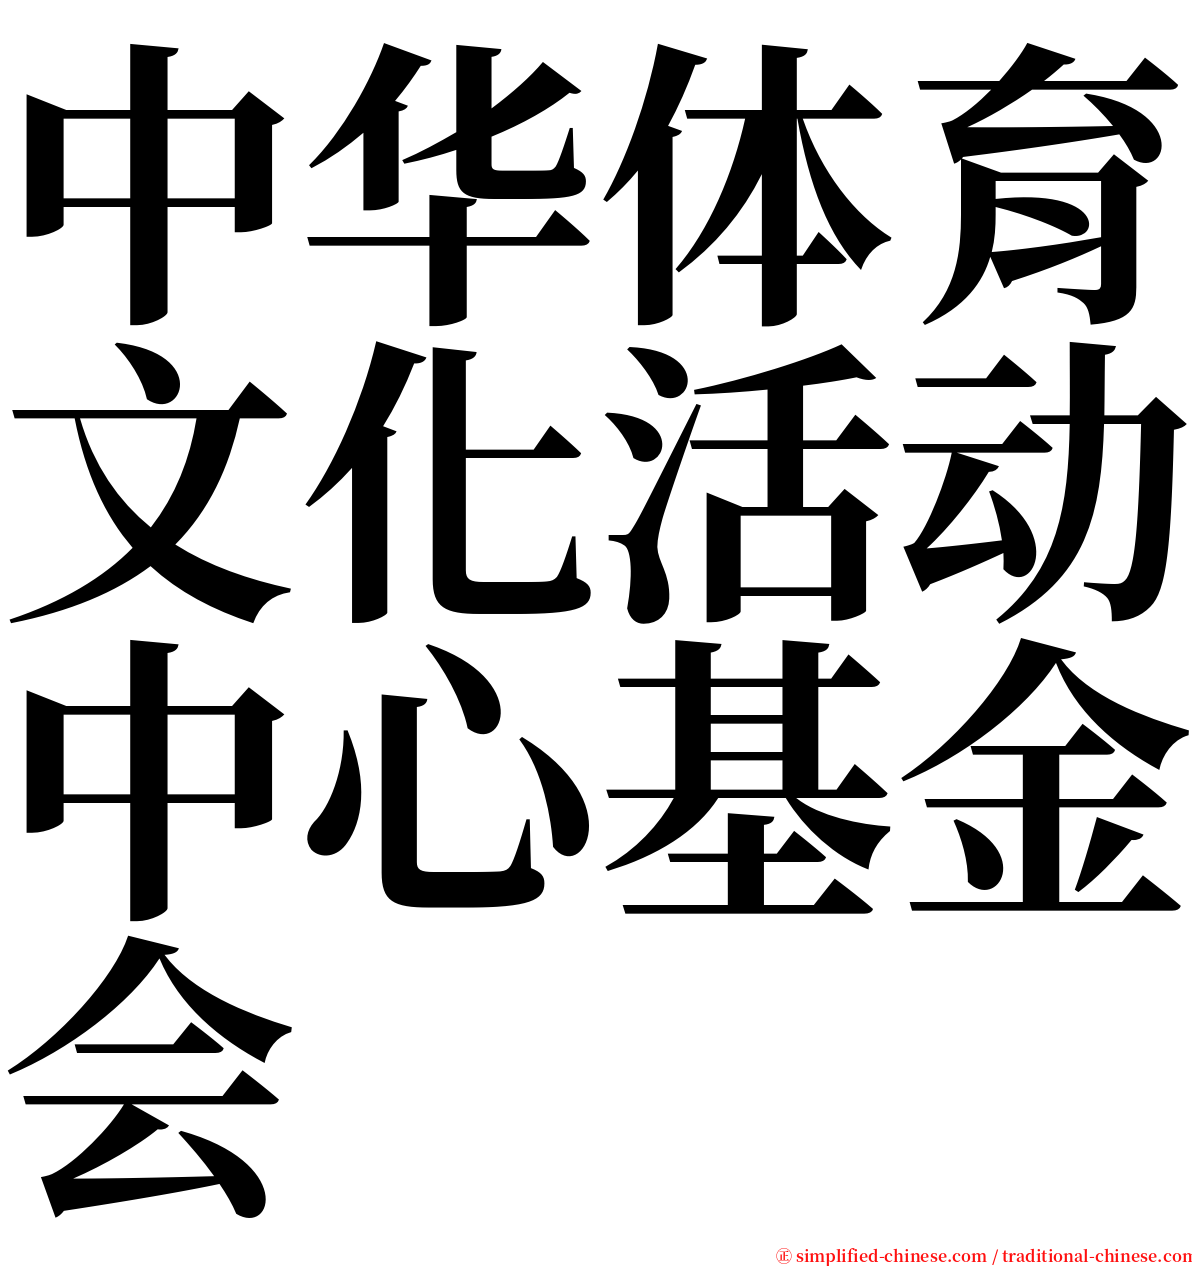 中华体育文化活动中心基金会 serif font